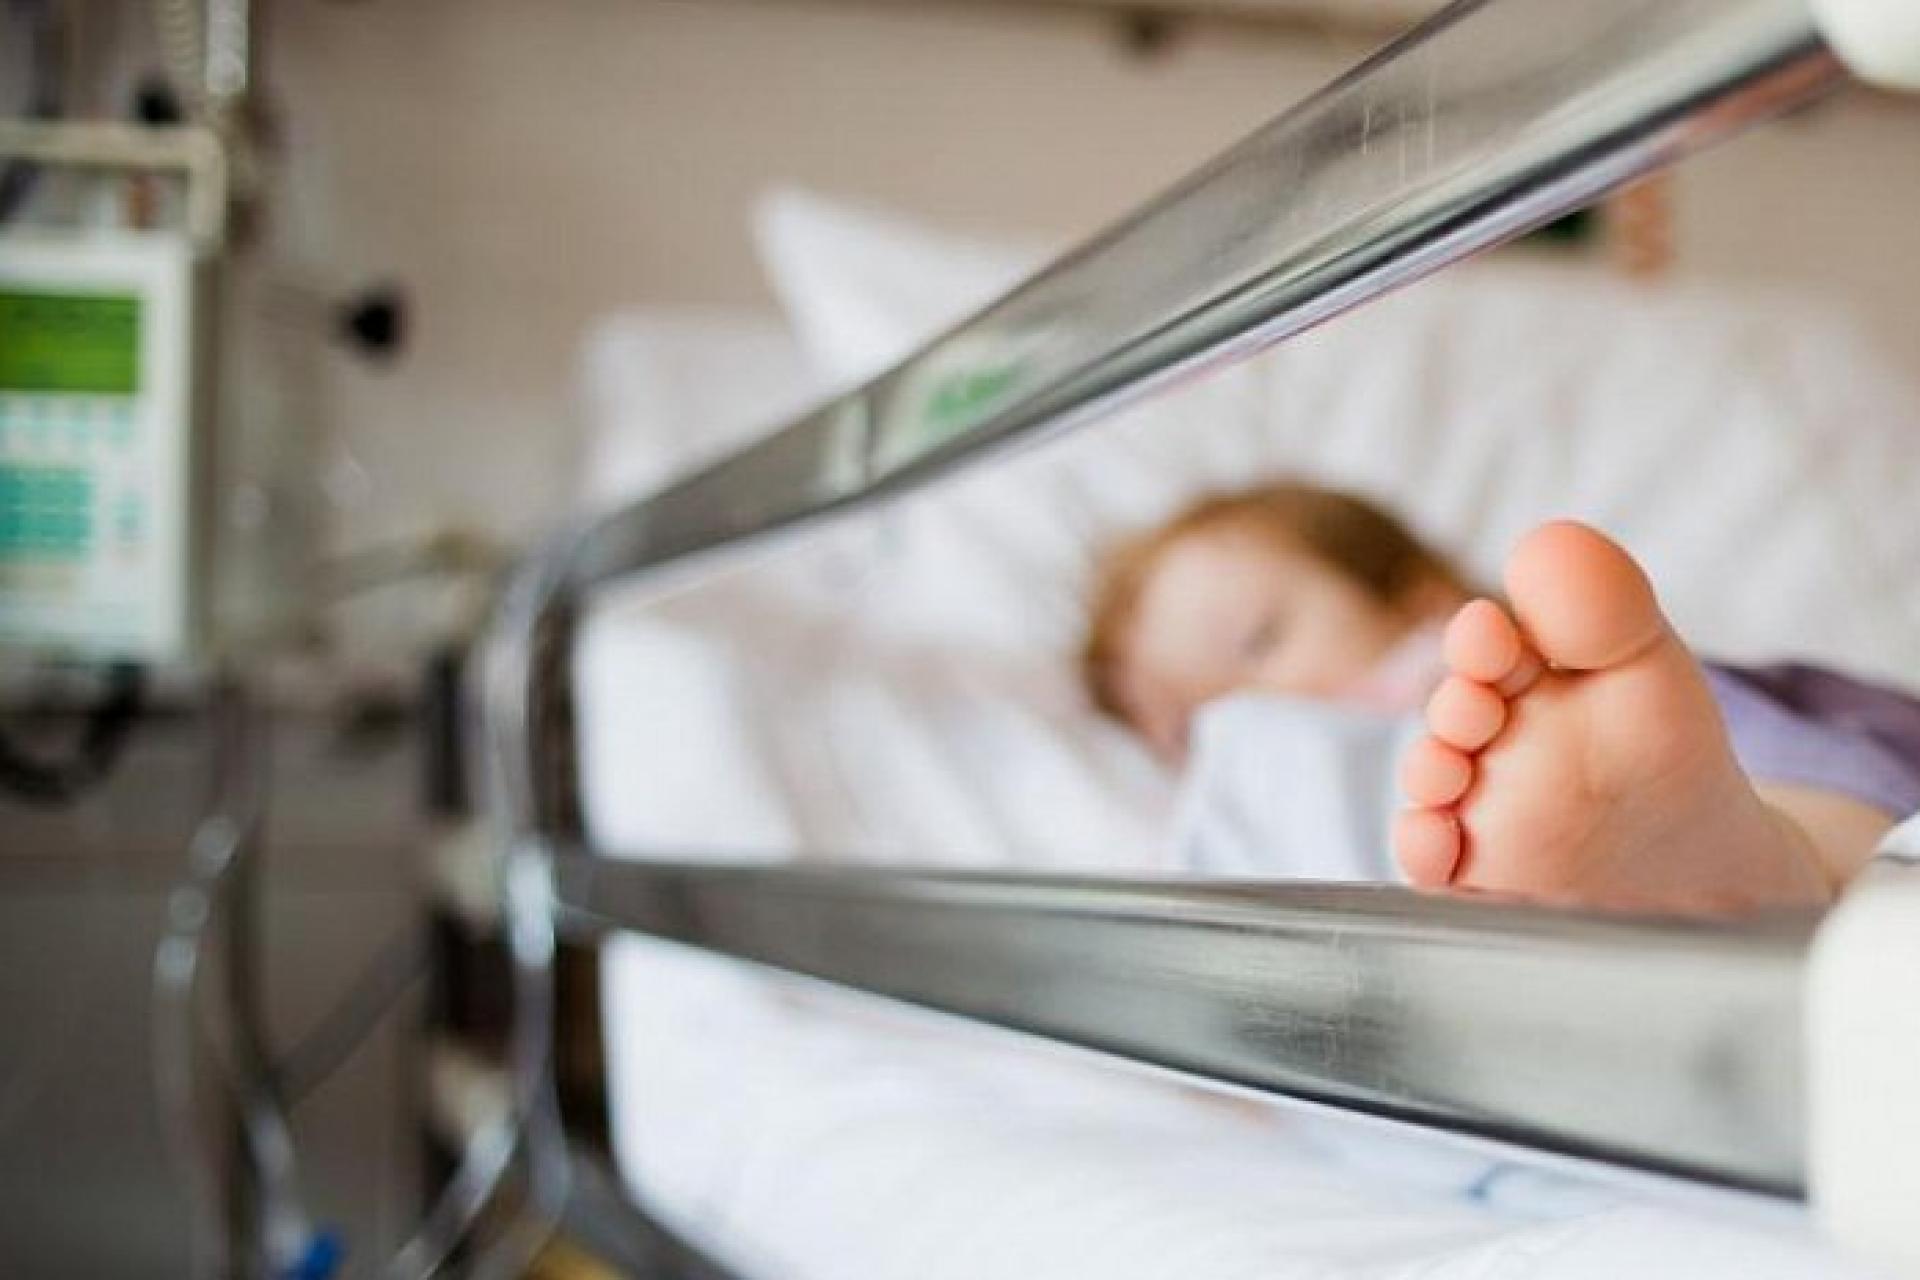 В Волгограде мать ребенка, заболевшего менингитом, обвинила врачей «в халатности» из-за долгой постановки диагноза